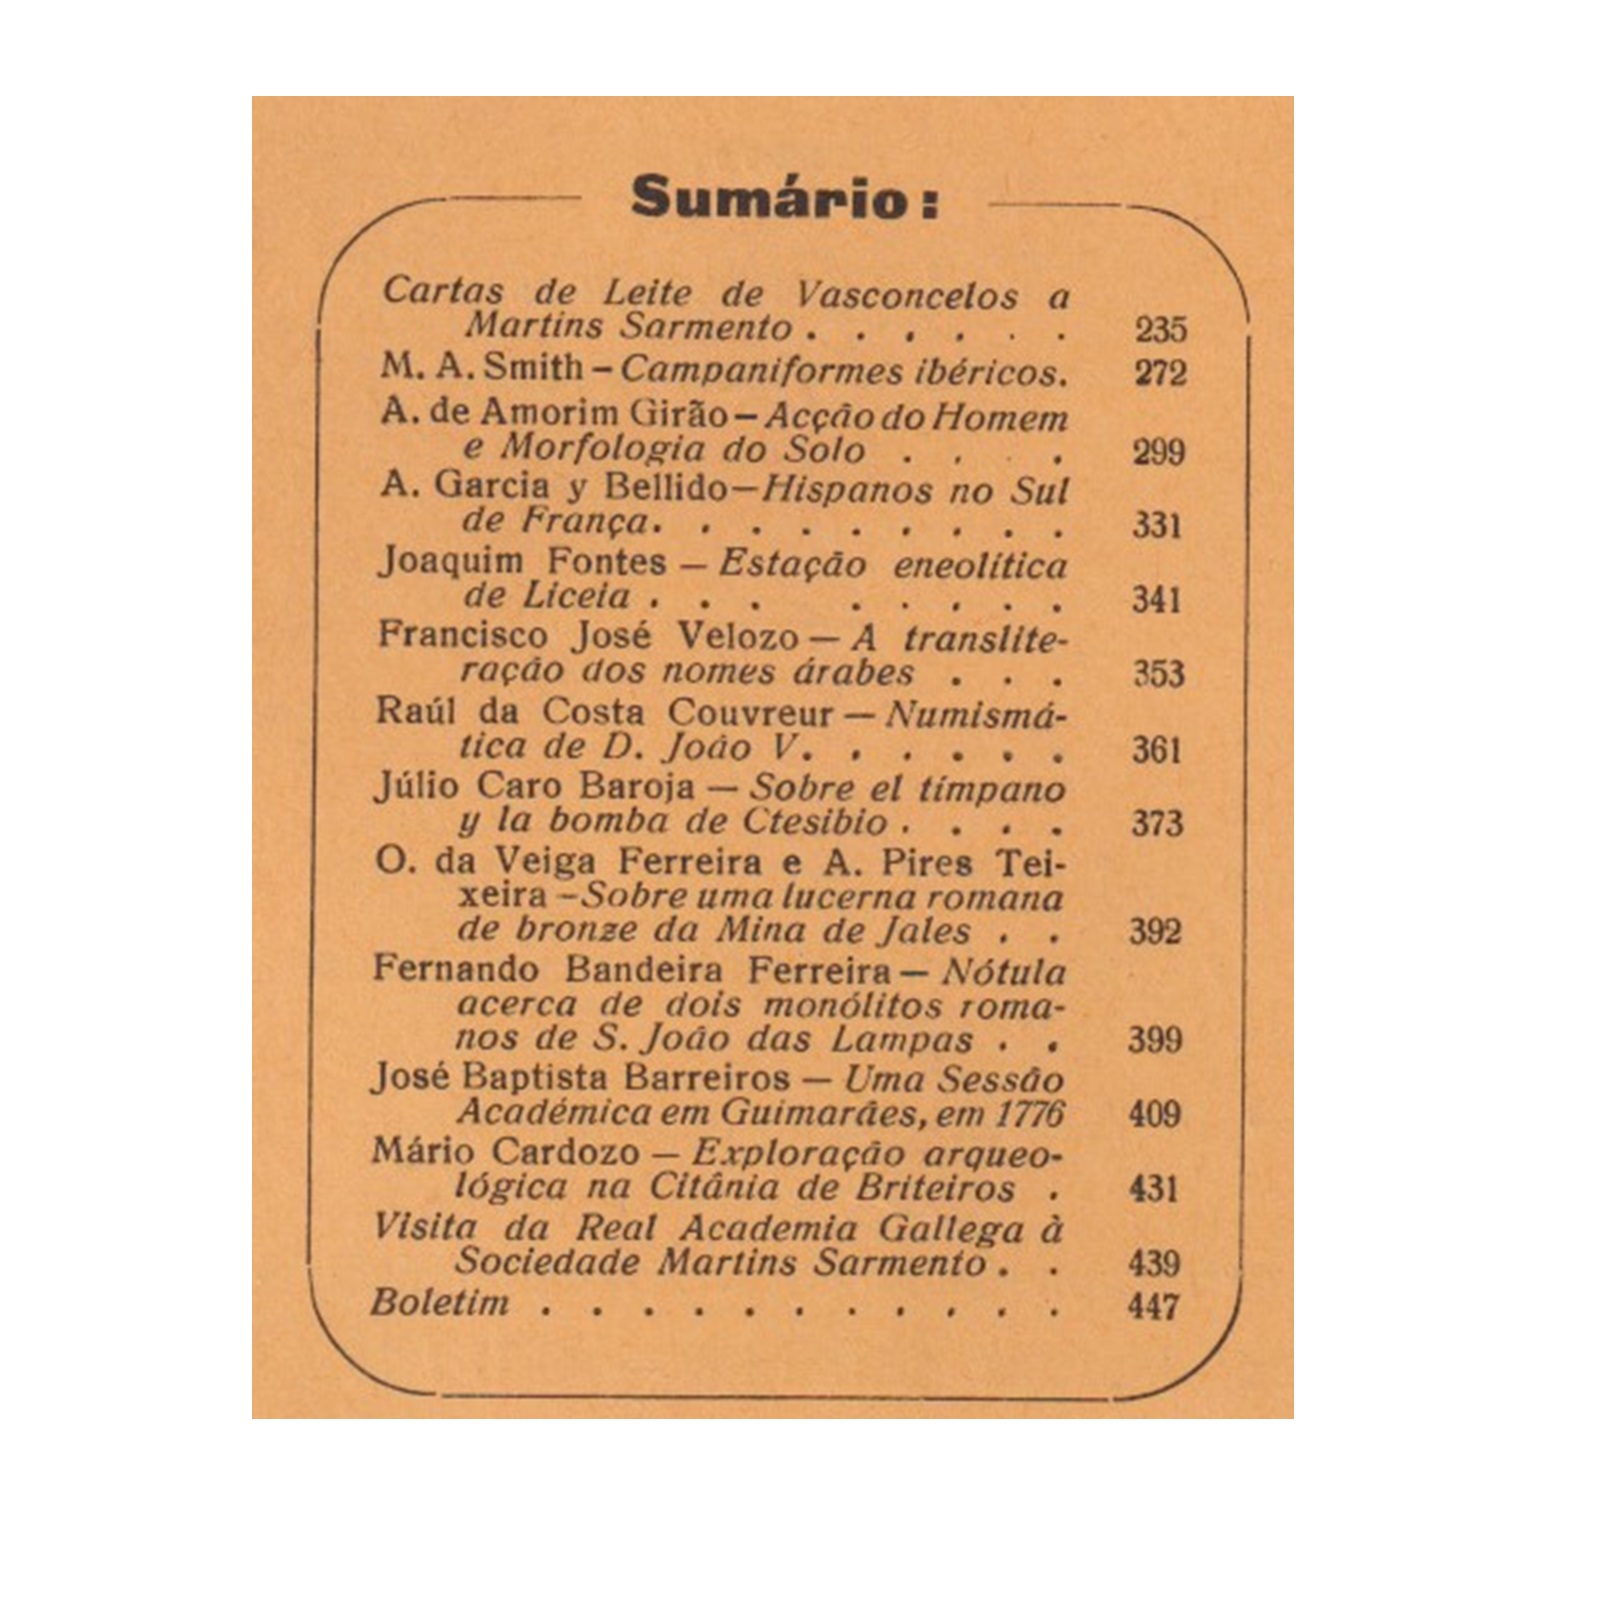 REVISTA DE GUIMARÃES. VOL. LXV. N.º 3-4, 1955